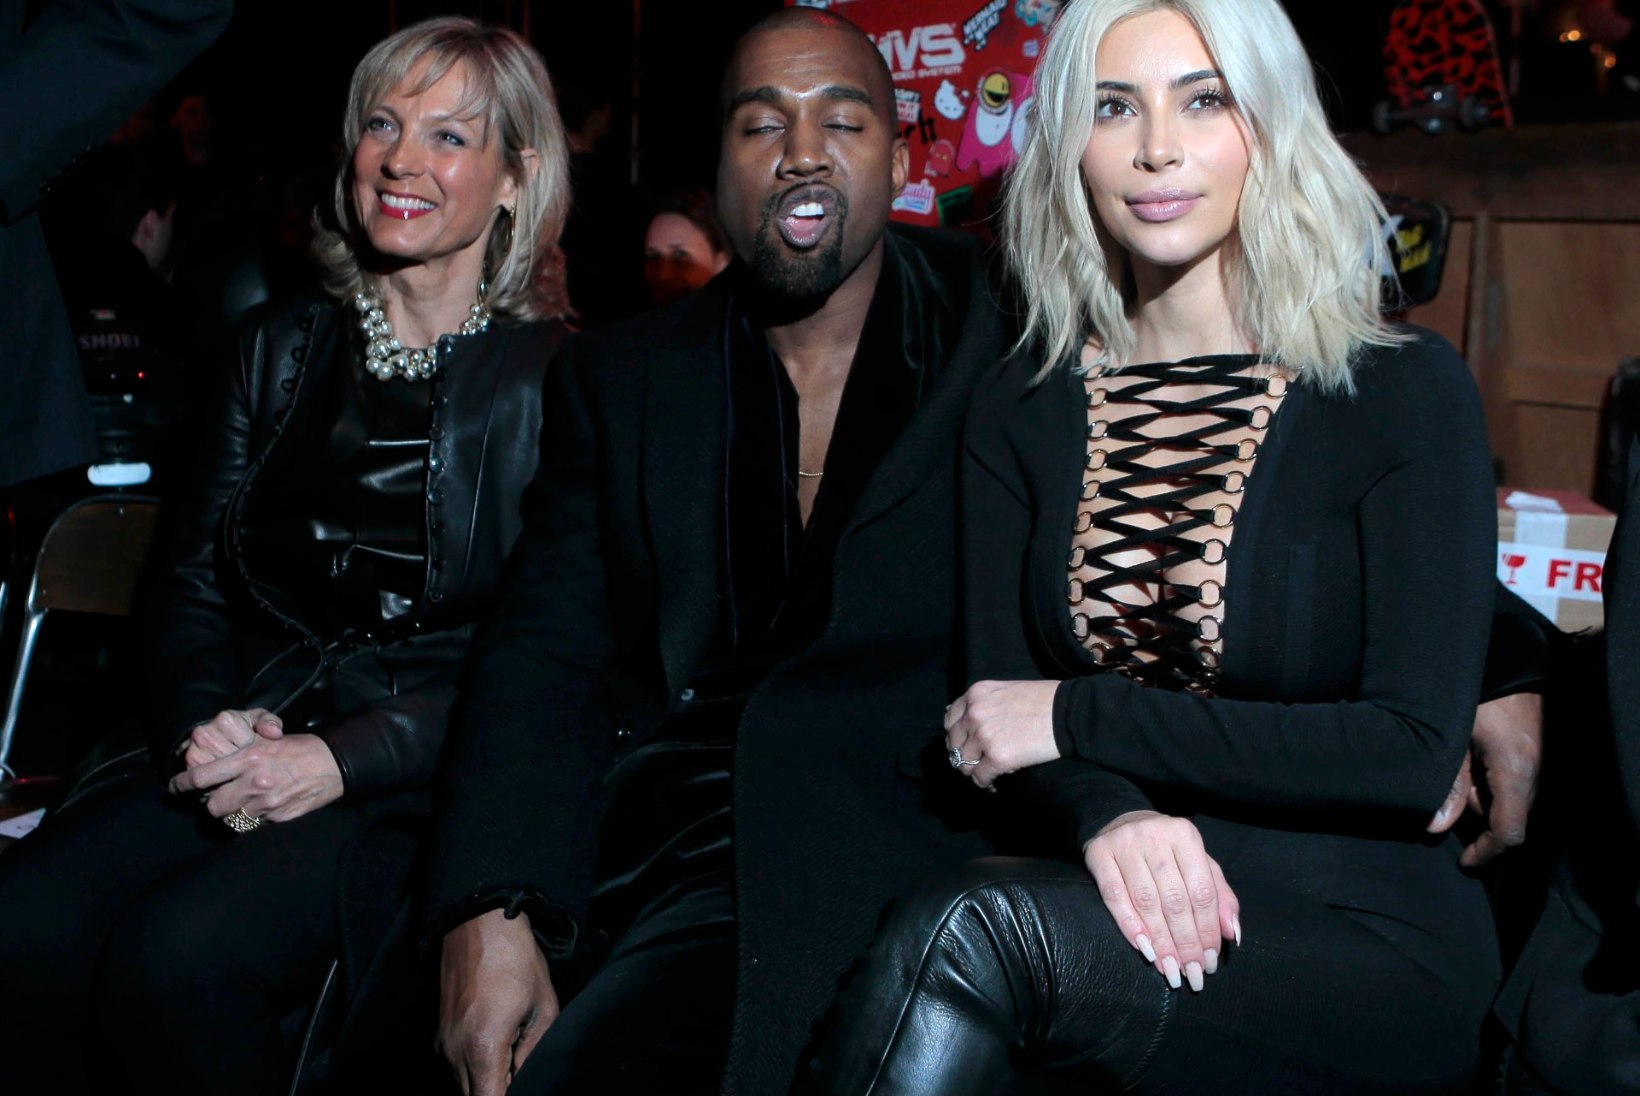 FOTOD: juuksed blondiks värvinud Kim Kardashian näitas Pariisi moenädalal kurve ja dekolteed